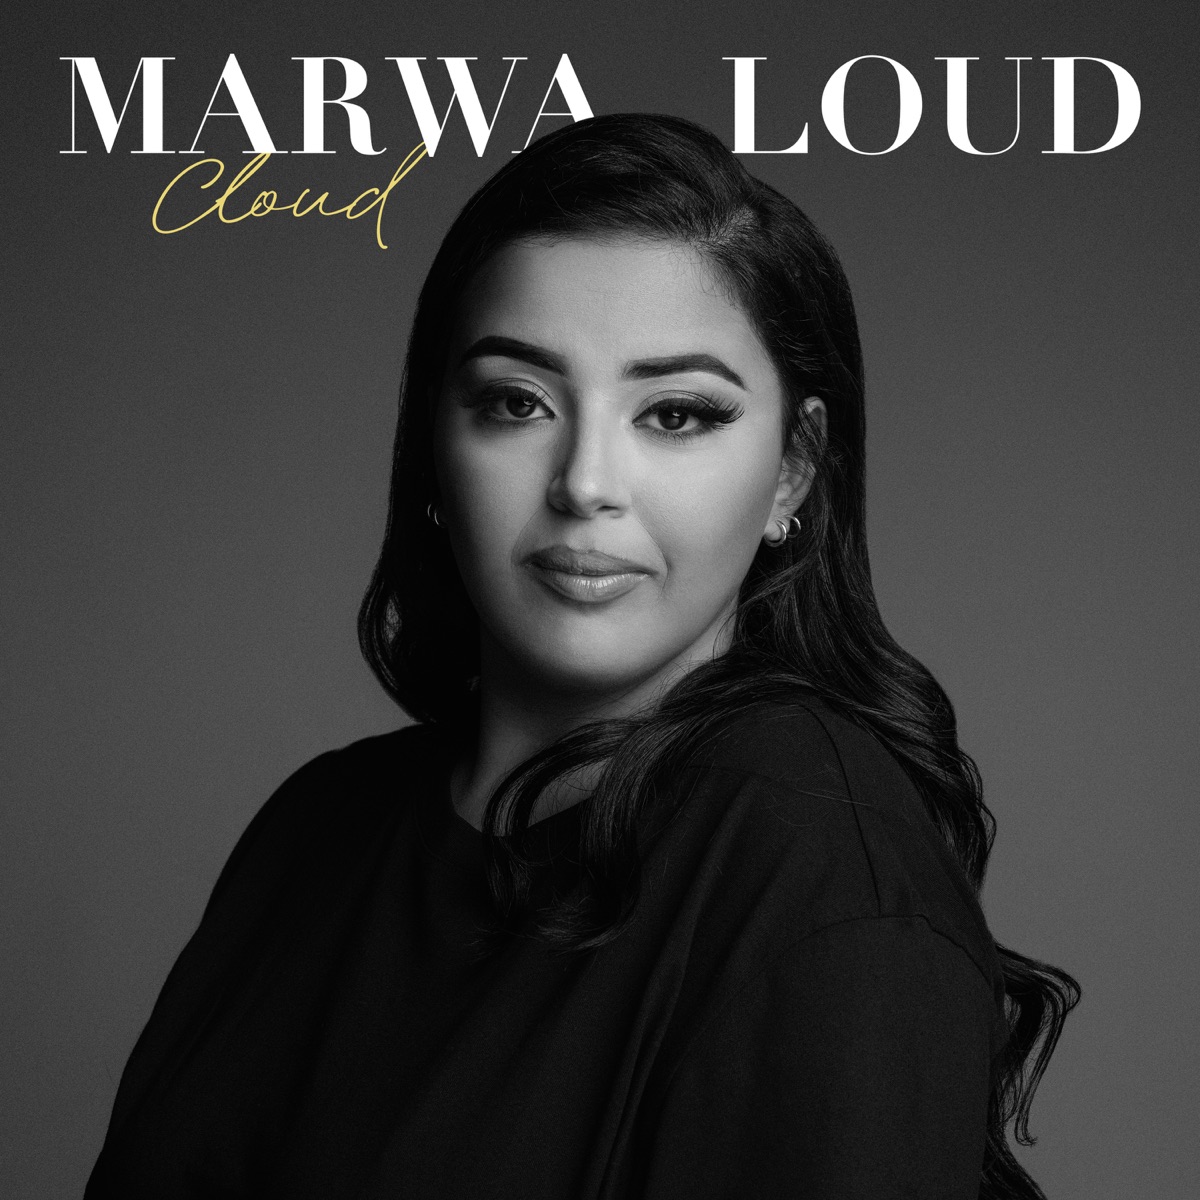 My Life par Marwa Loud sur Apple Music